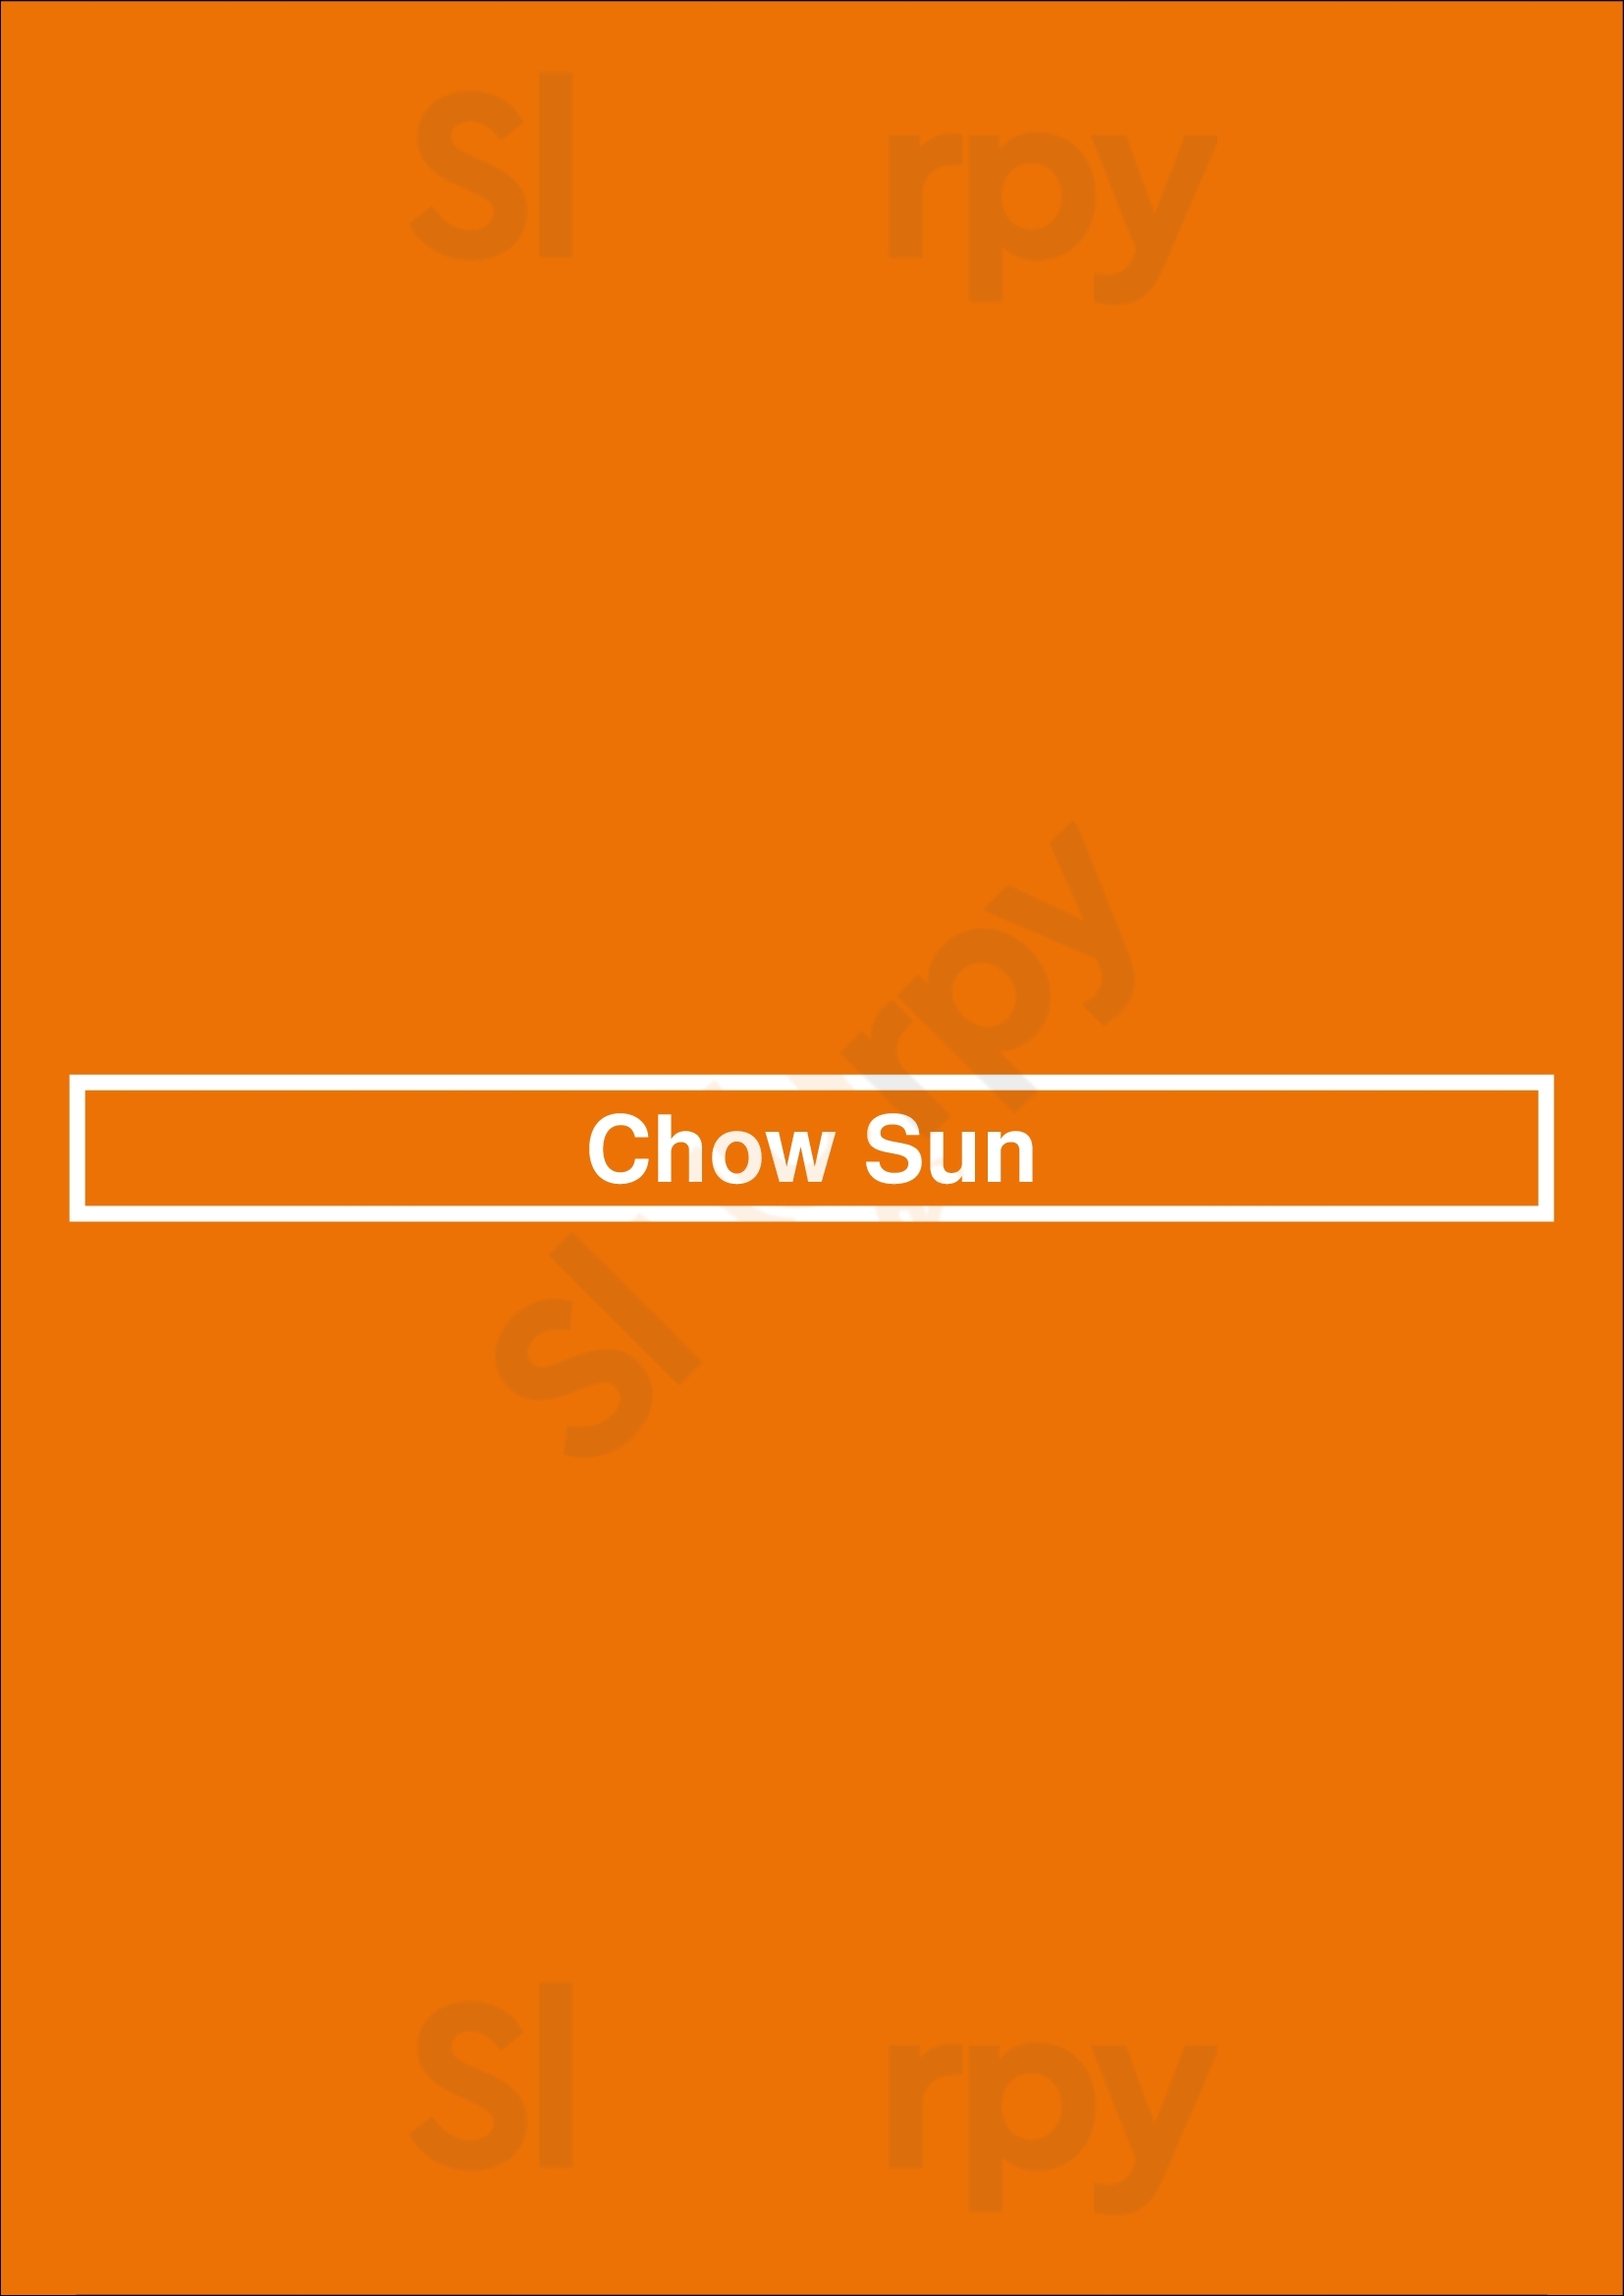 Chowsun Aurora Menu - 1